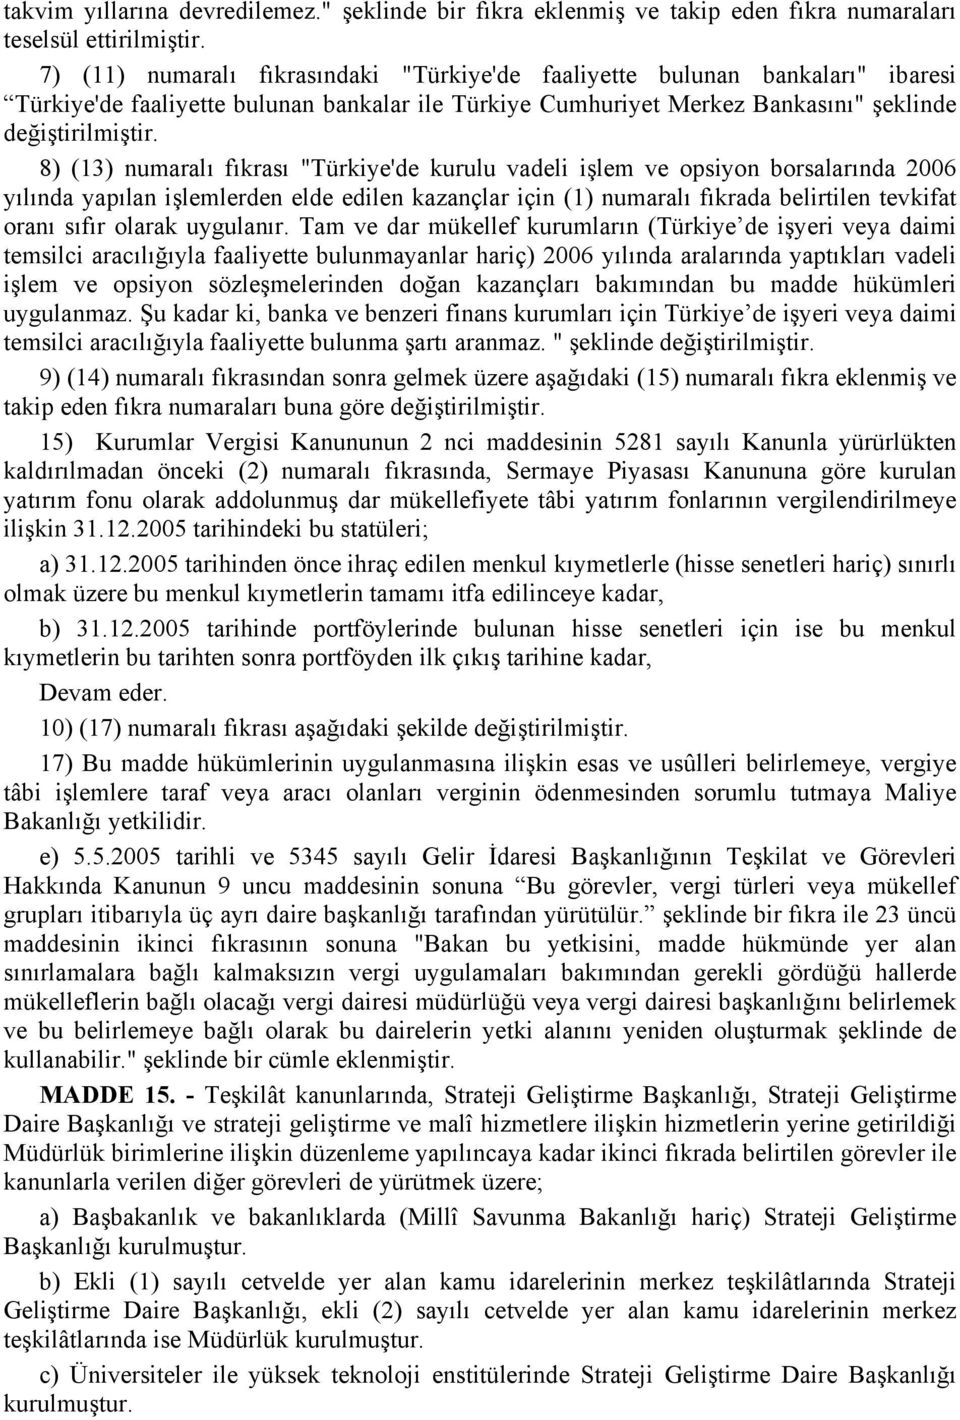 8) (13) numaralı fıkrası "Türkiye'de kurulu vadeli işlem ve opsiyon borsalarında 2006 yılında yapılan işlemlerden elde edilen kazançlar için (1) numaralı fıkrada belirtilen tevkifat oranı sıfır